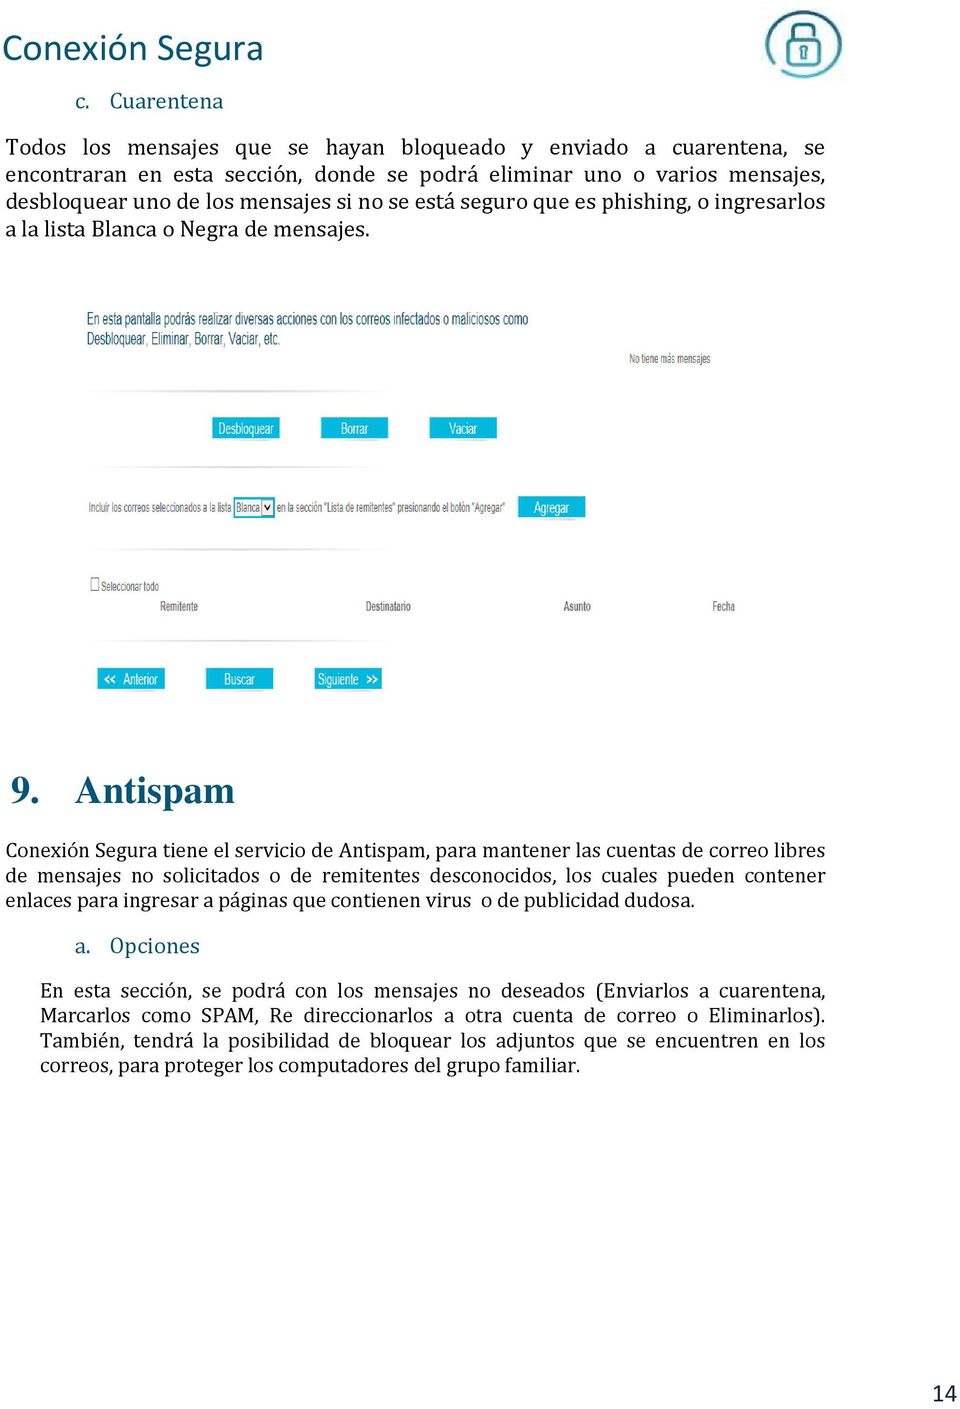 Antispam Conexión Segura tiene el servicio de Antispam, para mantener las cuentas de correo libres de mensajes no solicitados o de remitentes desconocidos, los cuales pueden contener enlaces para